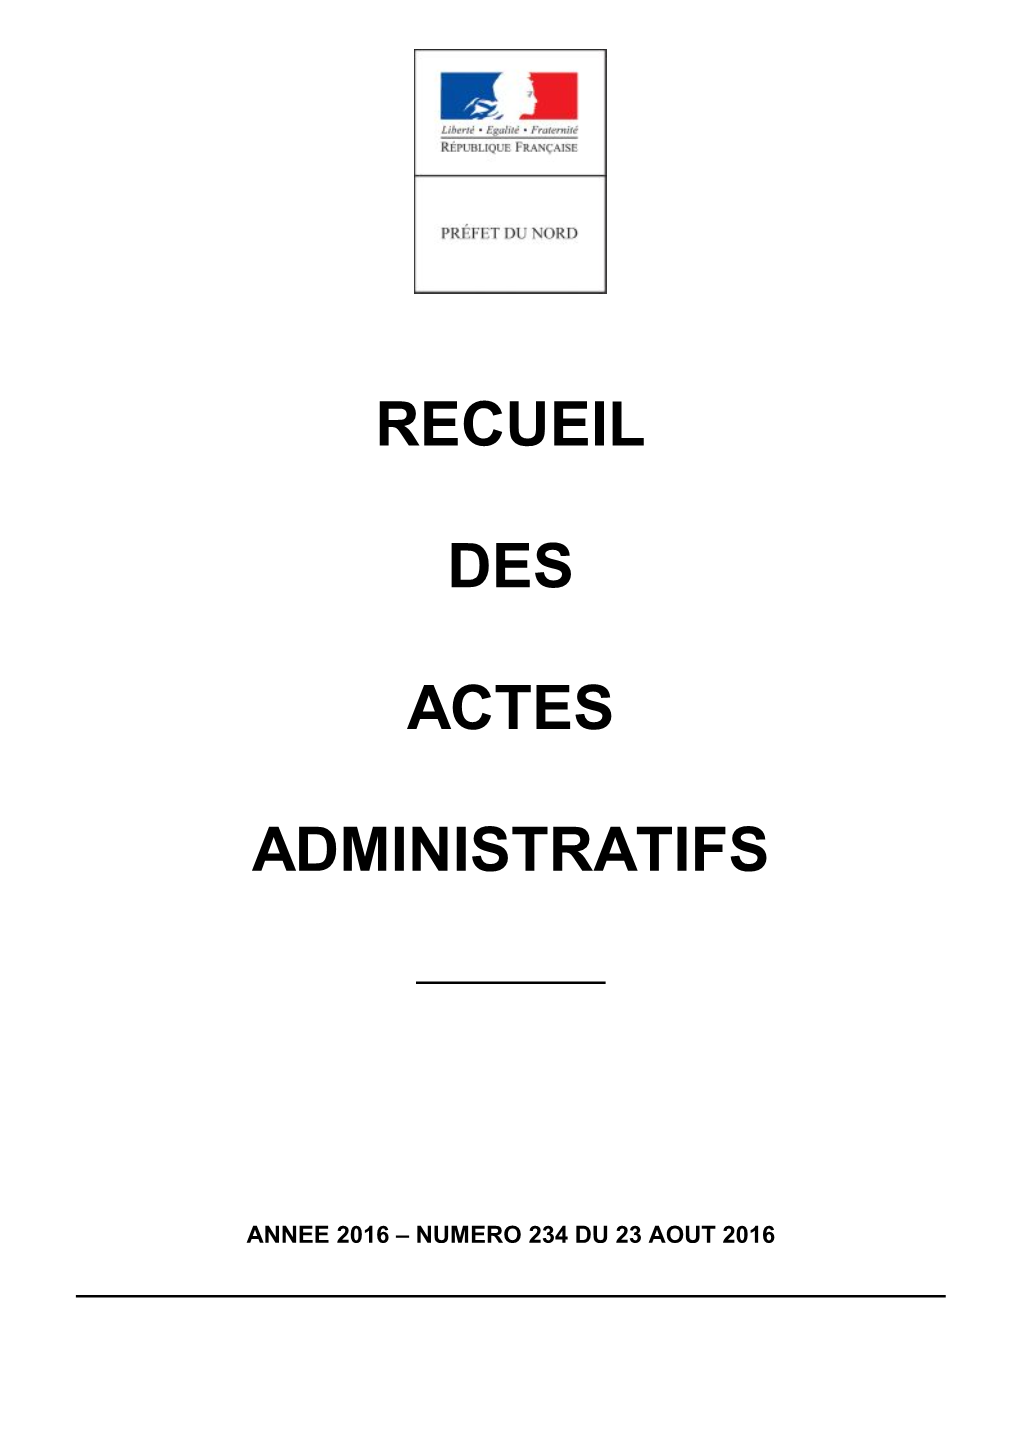 Recueil Des Actes Administratifs De La Préfecture Du Nord Année 2016 - N° 234 Du 23 Aout 2016